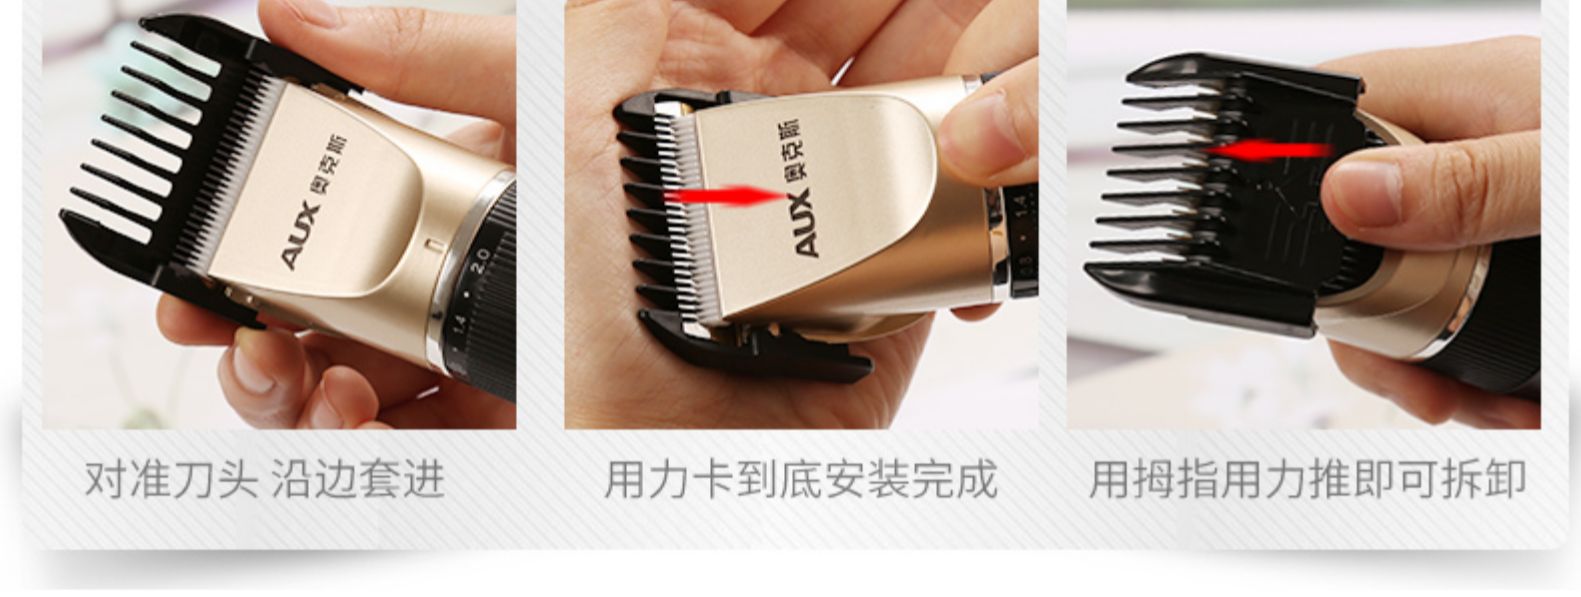 奥克斯aux理发器a5电推剪头发充电式电推子神器自己剃发电动剃头刀